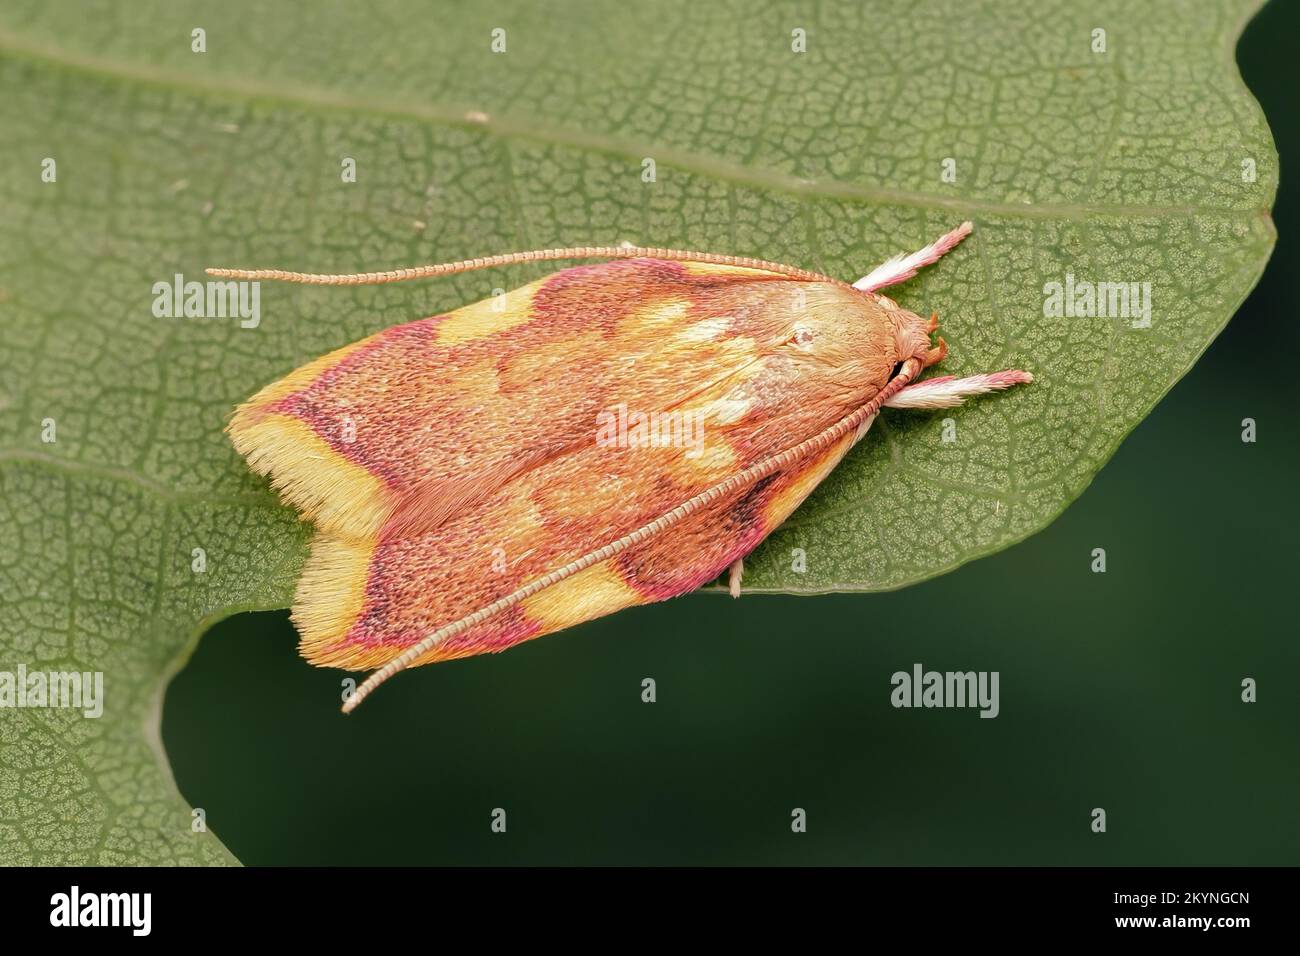 Carcina quercana Motte auf der Unterseite des Eichenblattes. Tipperary, Irland Stockfoto